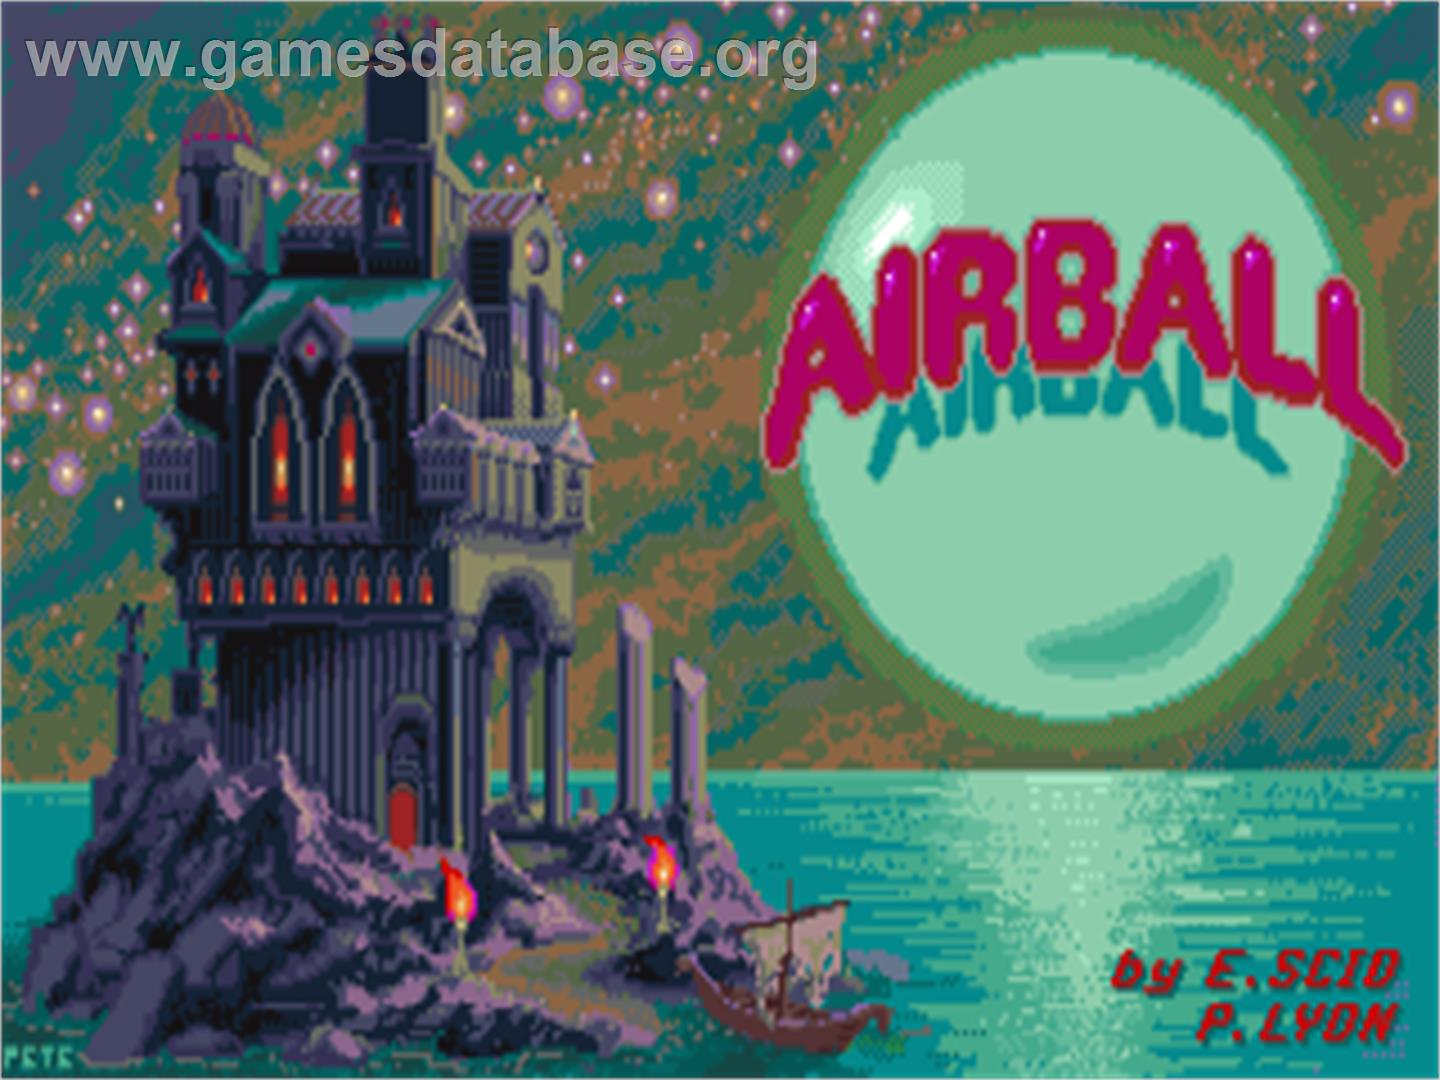 Airball - Commodore Amiga - Artwork - Title Screen